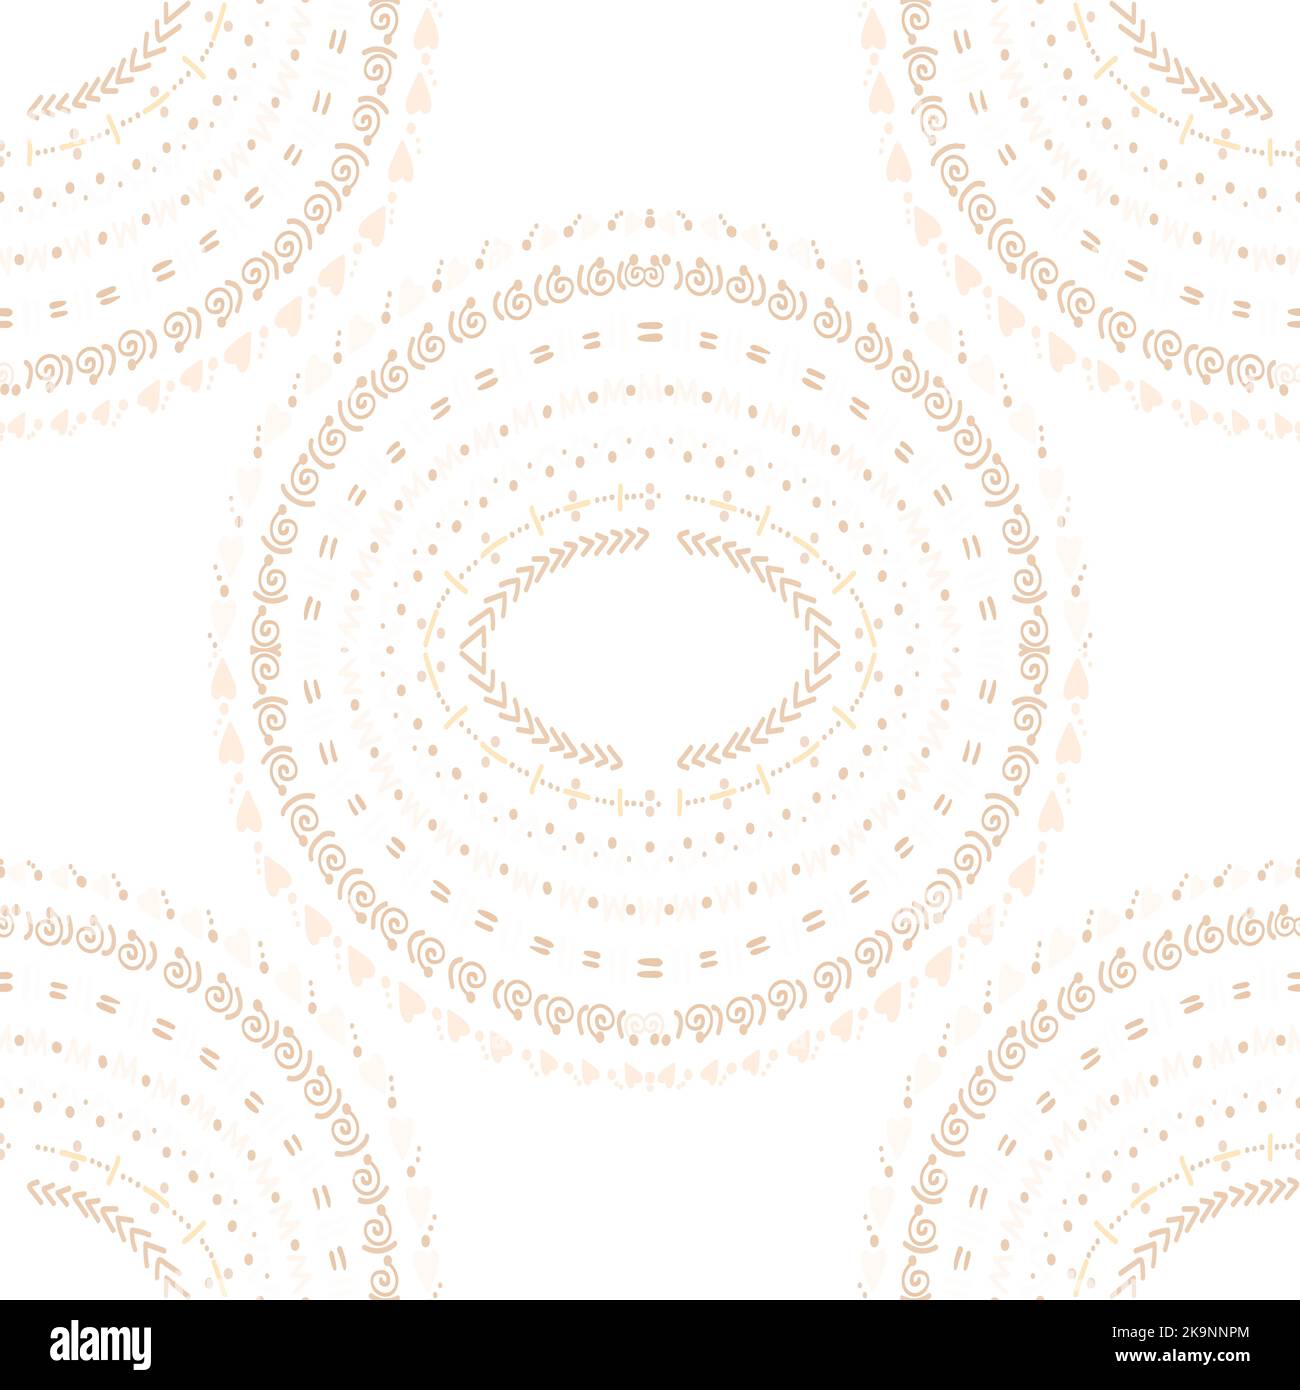 Nahtlose Textur von abstrakten Ornamenten im Kreis. Dekorative Muster für Tapeten, Web, Textilien, Drucke. Dekorative Formen im Ethno-Stil auf weißem Rücken Stock Vektor